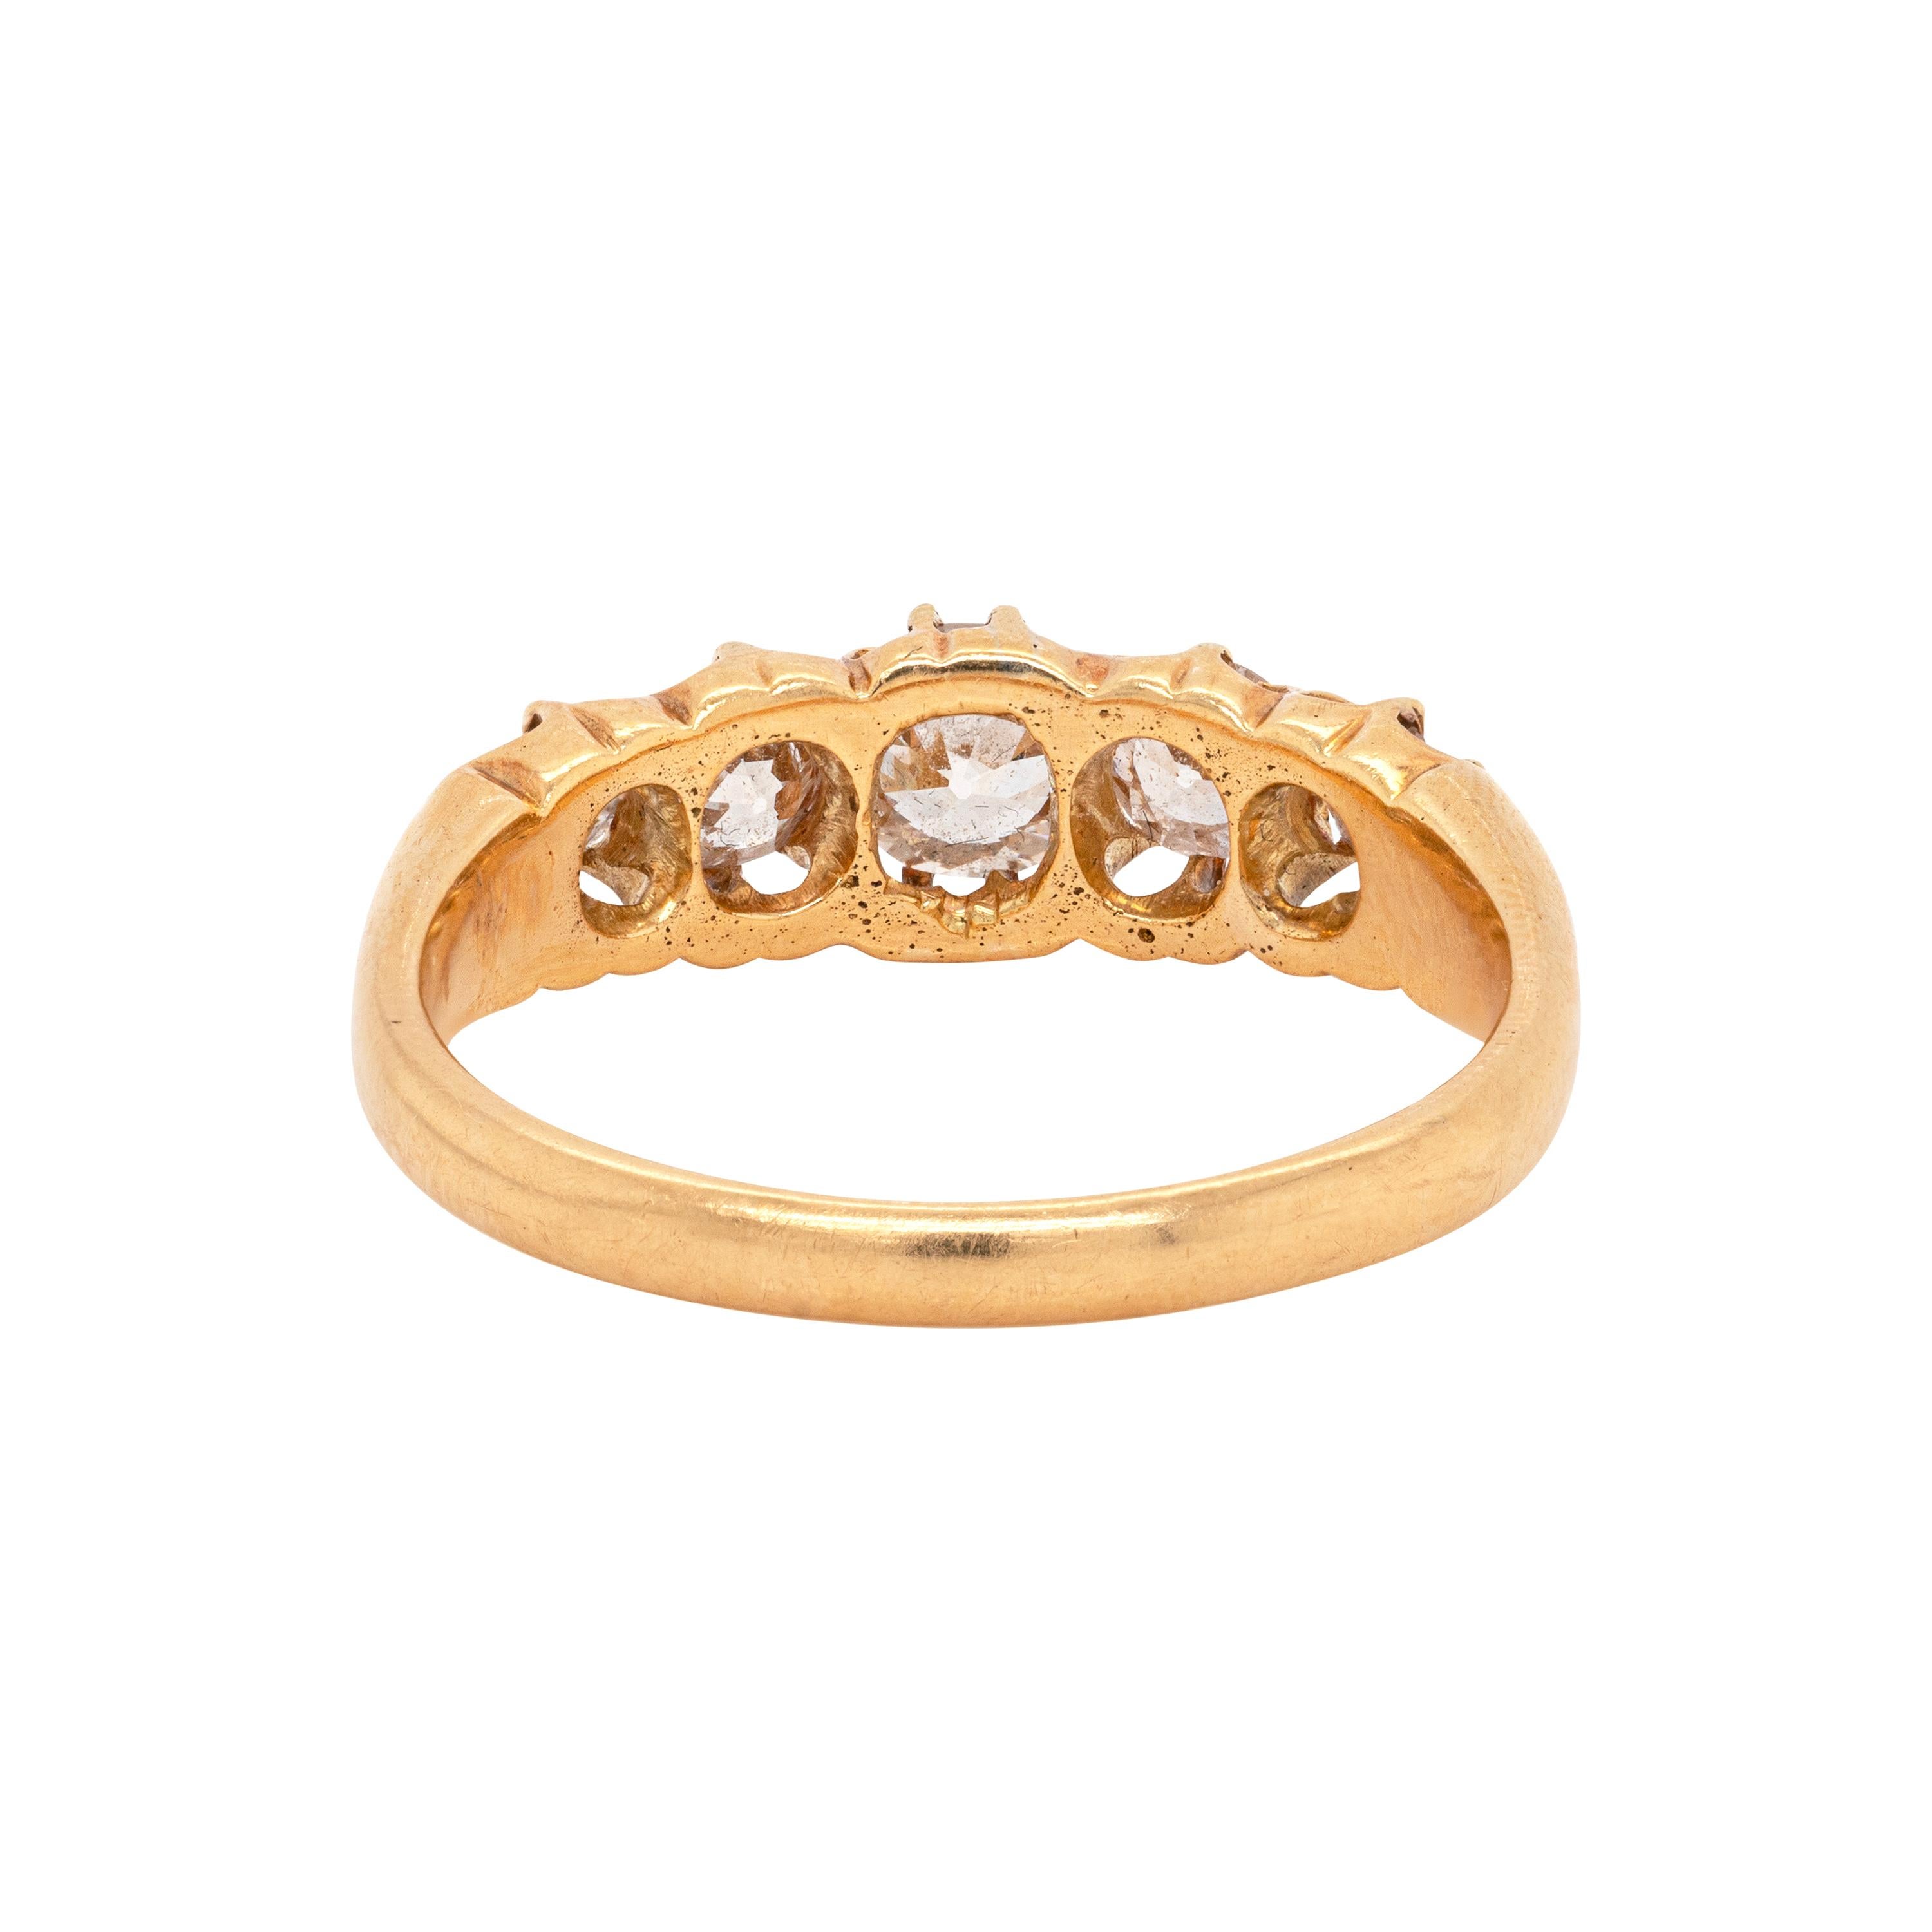 Diese antike Edwardian geschnitzt Ring verfügt über fünf alten geschliffenen Diamanten mit einem ungefähren Gesamtgewicht von 1,20 ct, die alle sicher Kralle in einem offenen zurück 18 Karat Gelbgold Einstellung gesetzt. Fünf Steinringe sollen für